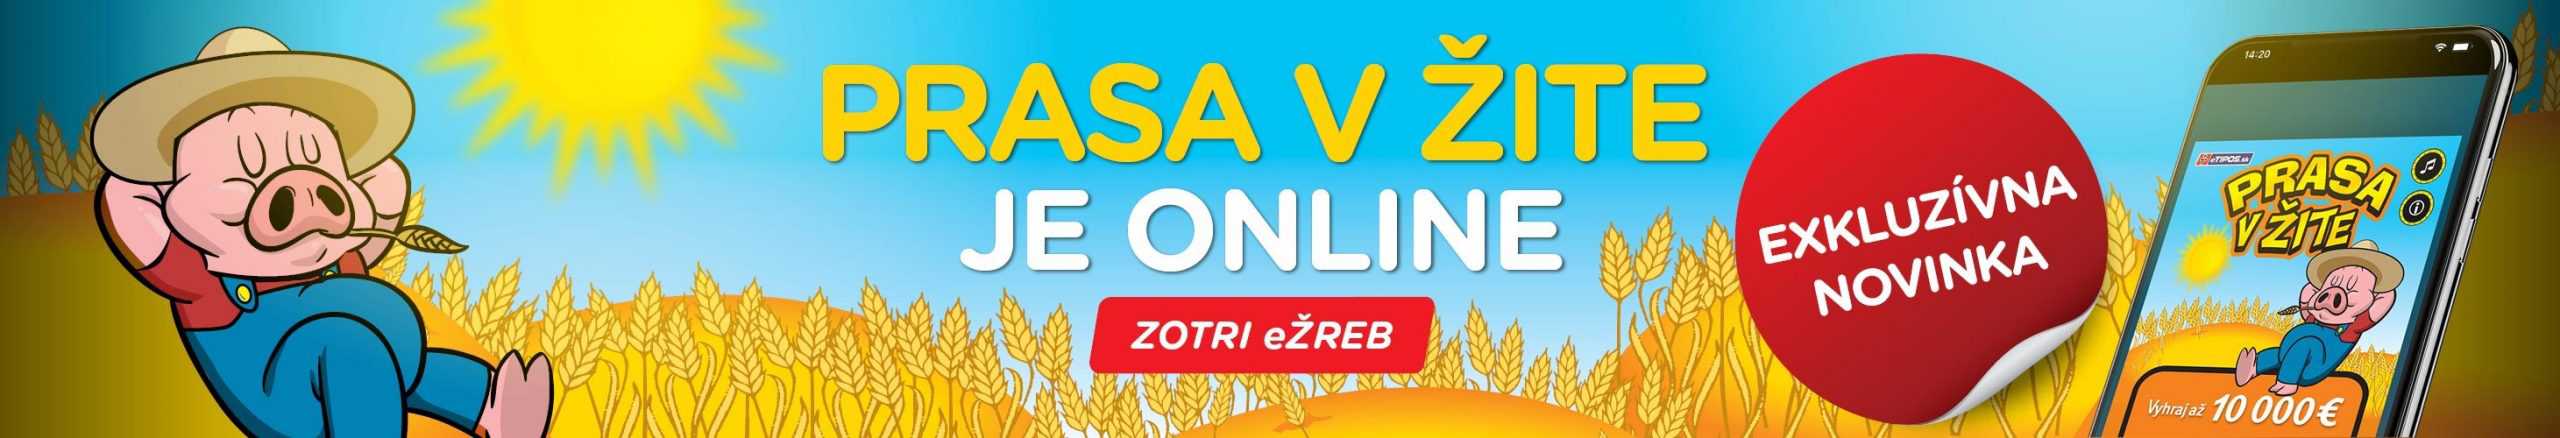 Online žreb Prasa v žite - banner